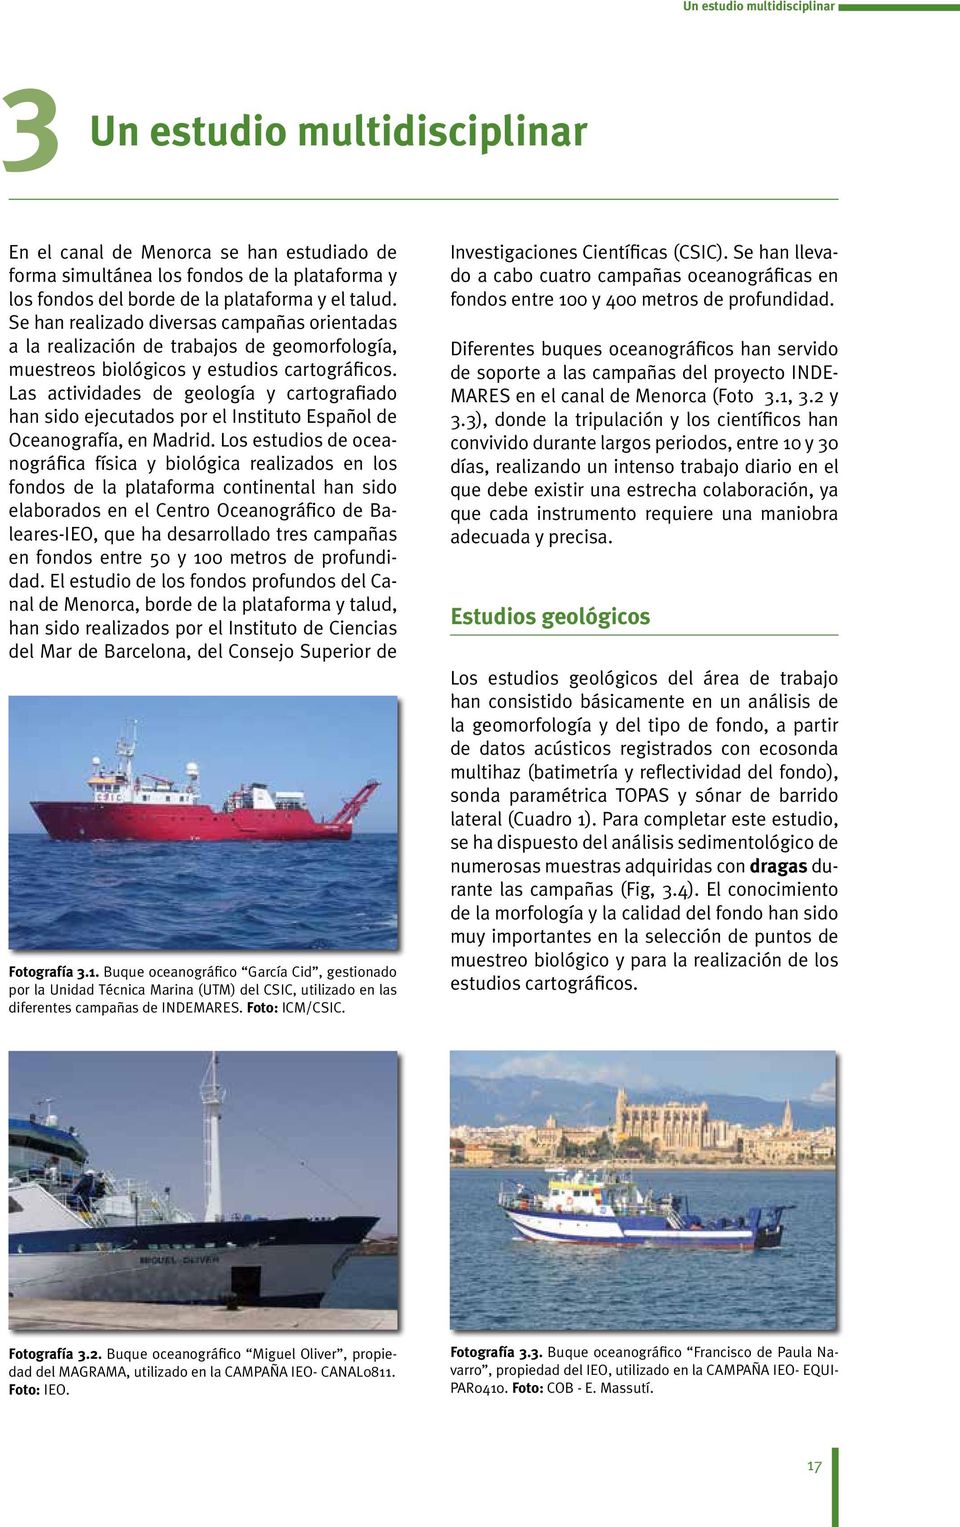 Las actividades de geología y cartografiado han sido ejecutados por el Instituto Español de Oceanografía, en Madrid.